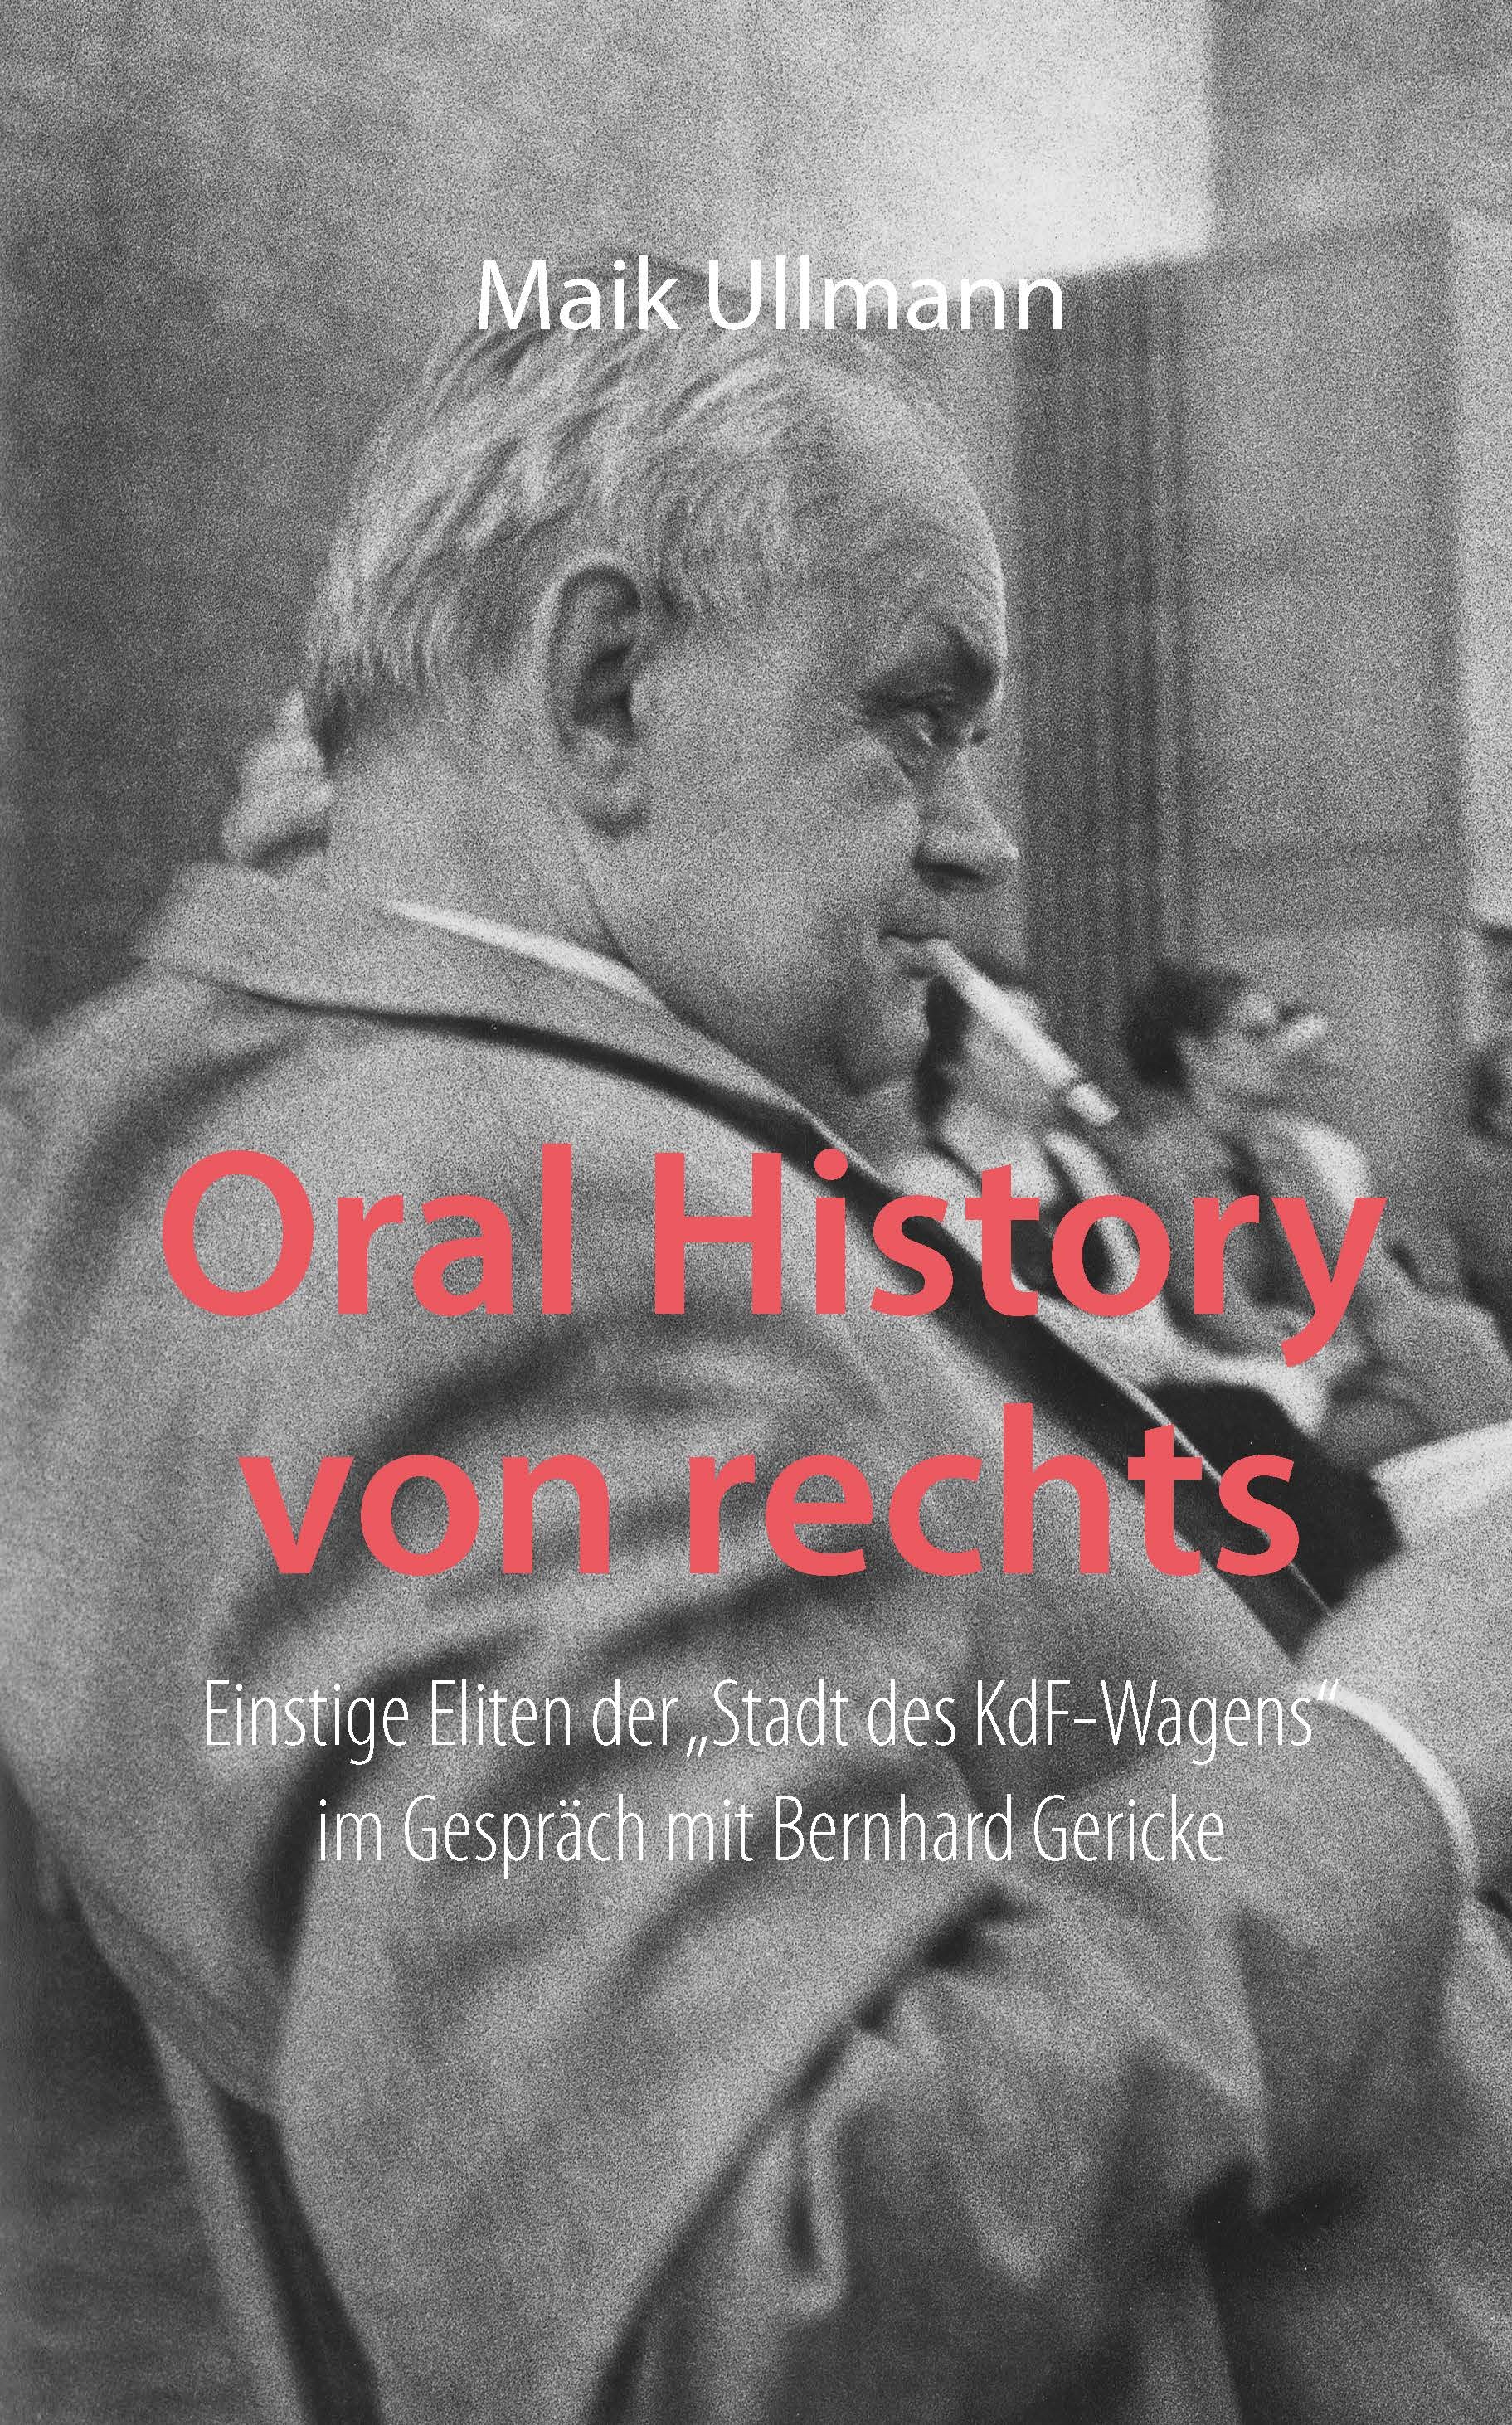 Titelblatt des Buchs "Oral History von rechts. Einstige Eliten der „Stadt des KdF-Wagens“ im Gespräch mit Bernhard Gericke"